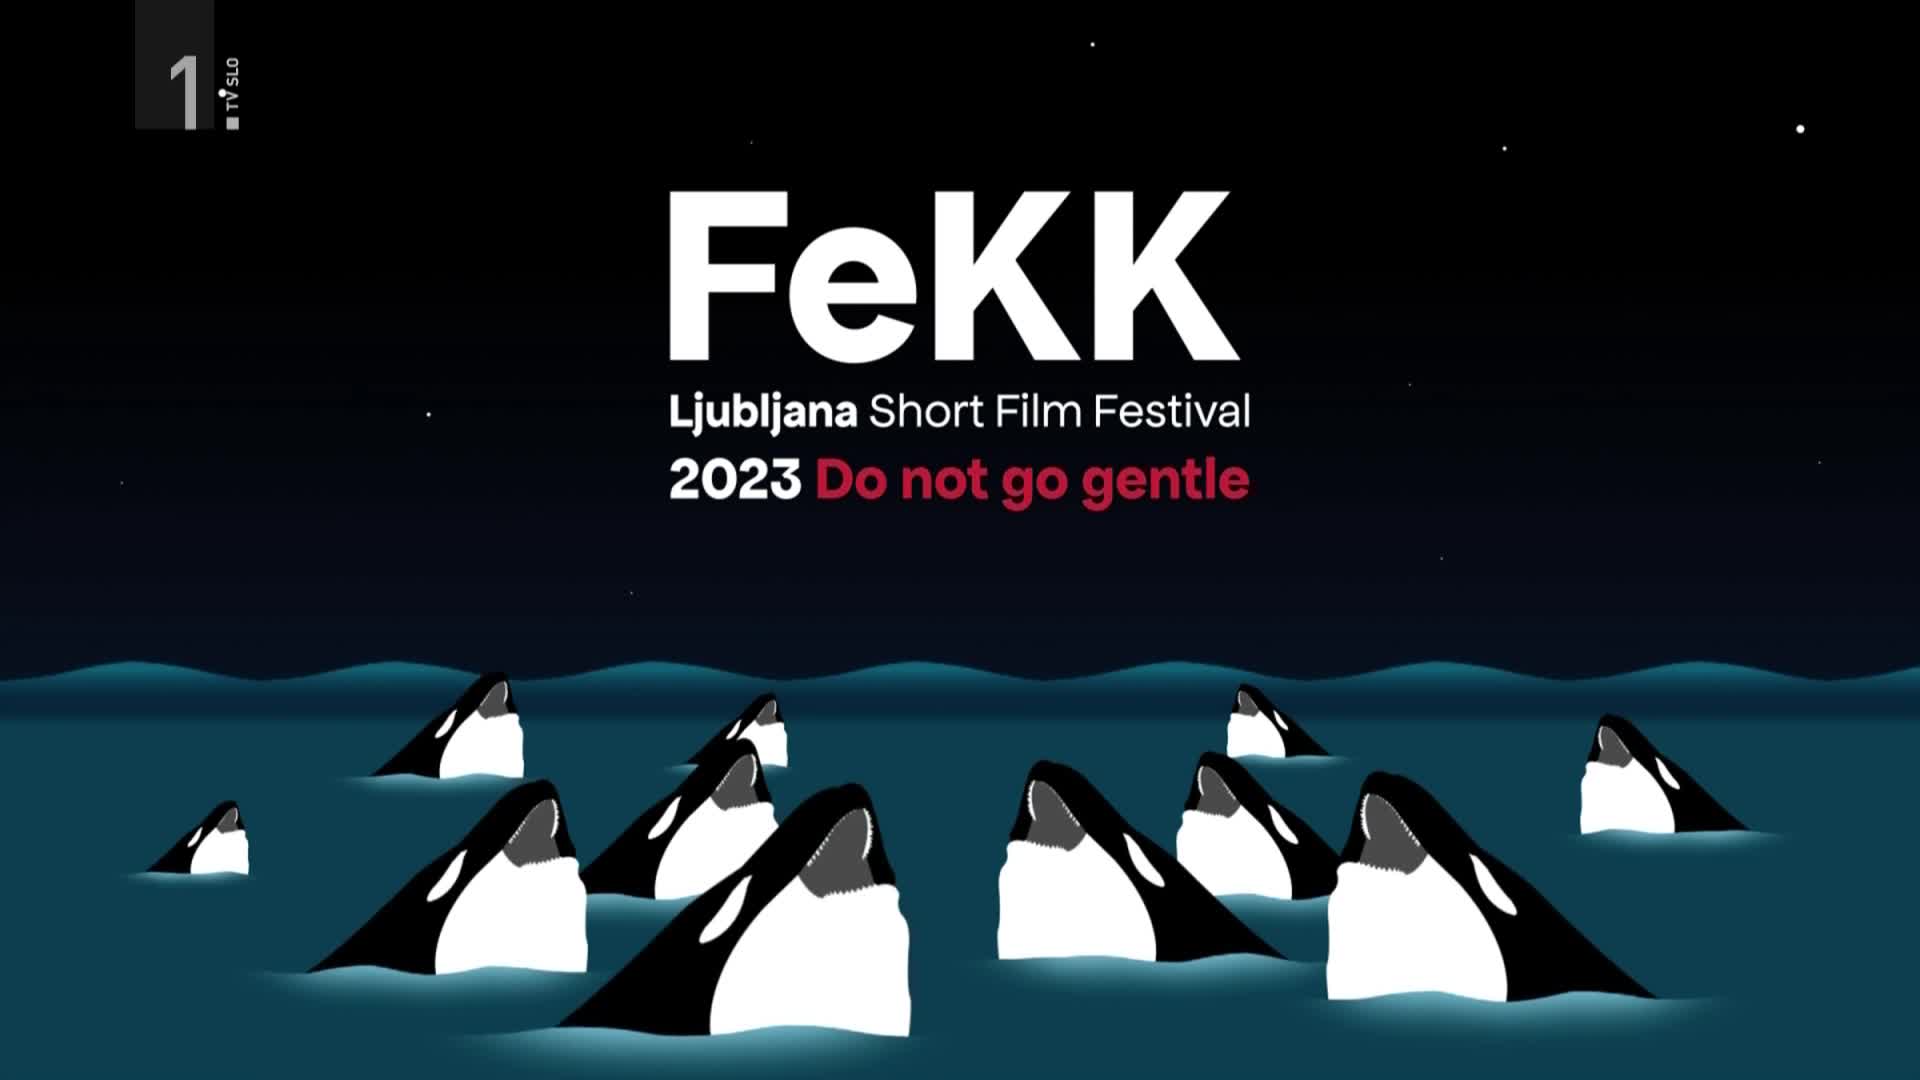 V Ljubljani 9. FeKK – Festival kratkega filma